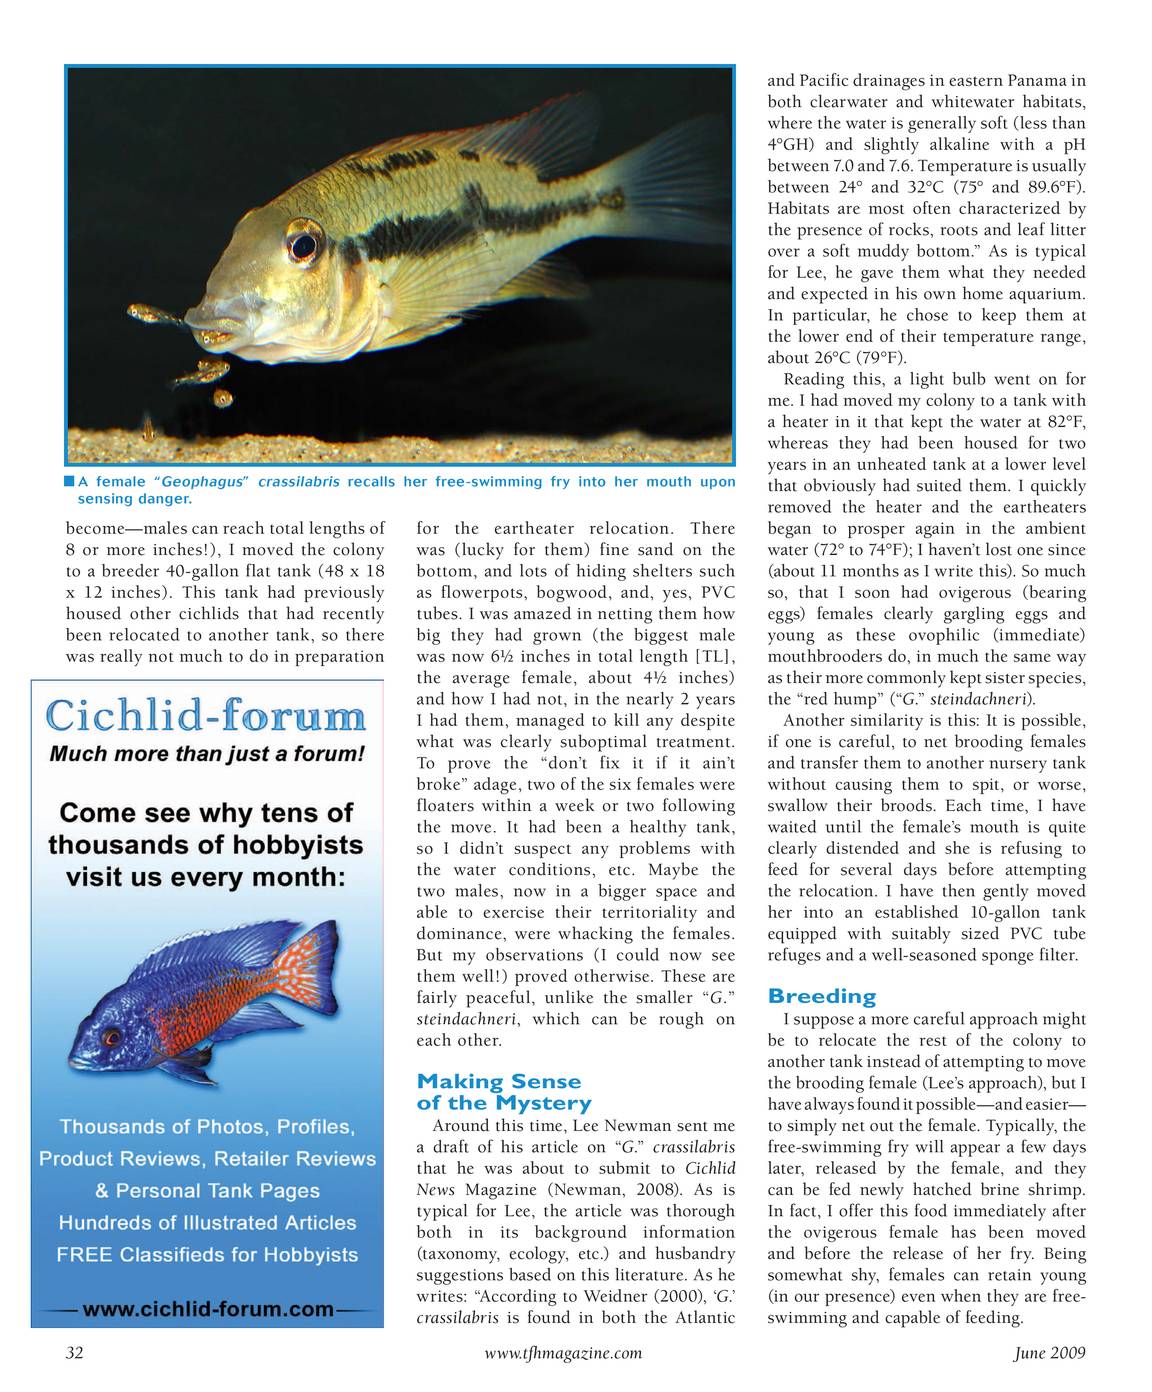 90 Gallon Fish Tank  British Columbia Aquarium Forums